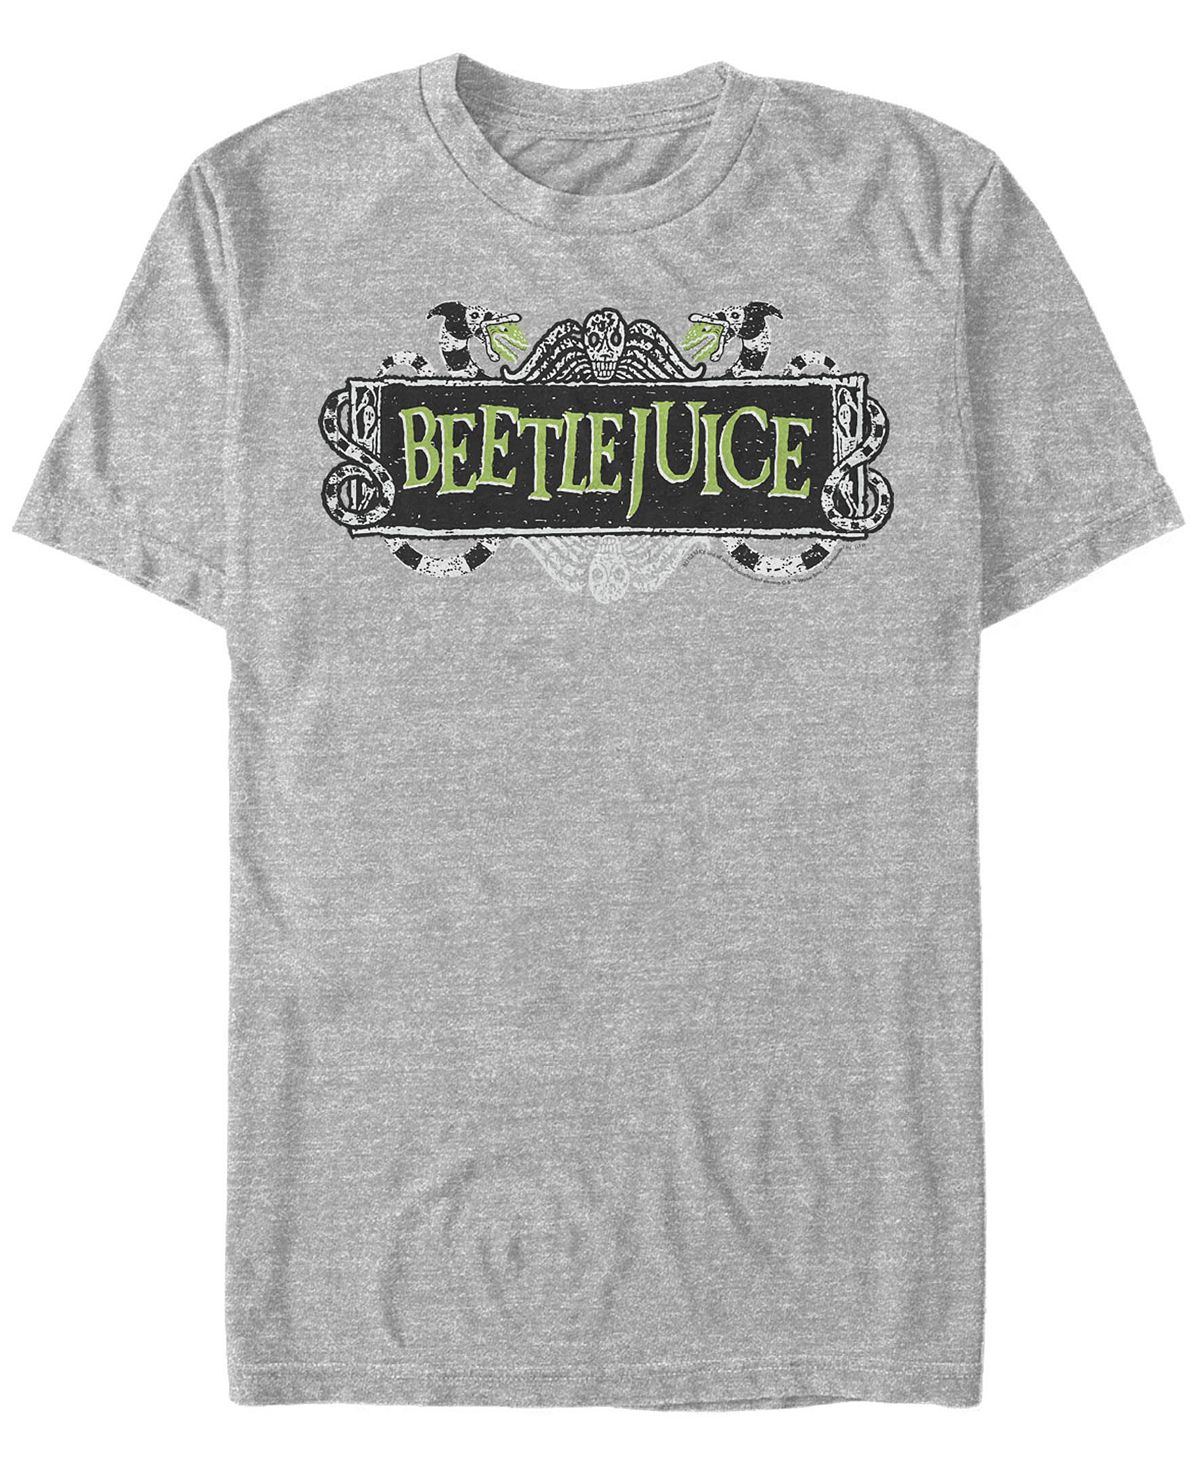 рюкзак битлджус beetlejuice розовый 1 Мужская футболка с коротким рукавом с логотипом beetlejuice beetlejuice Fifth Sun, мульти